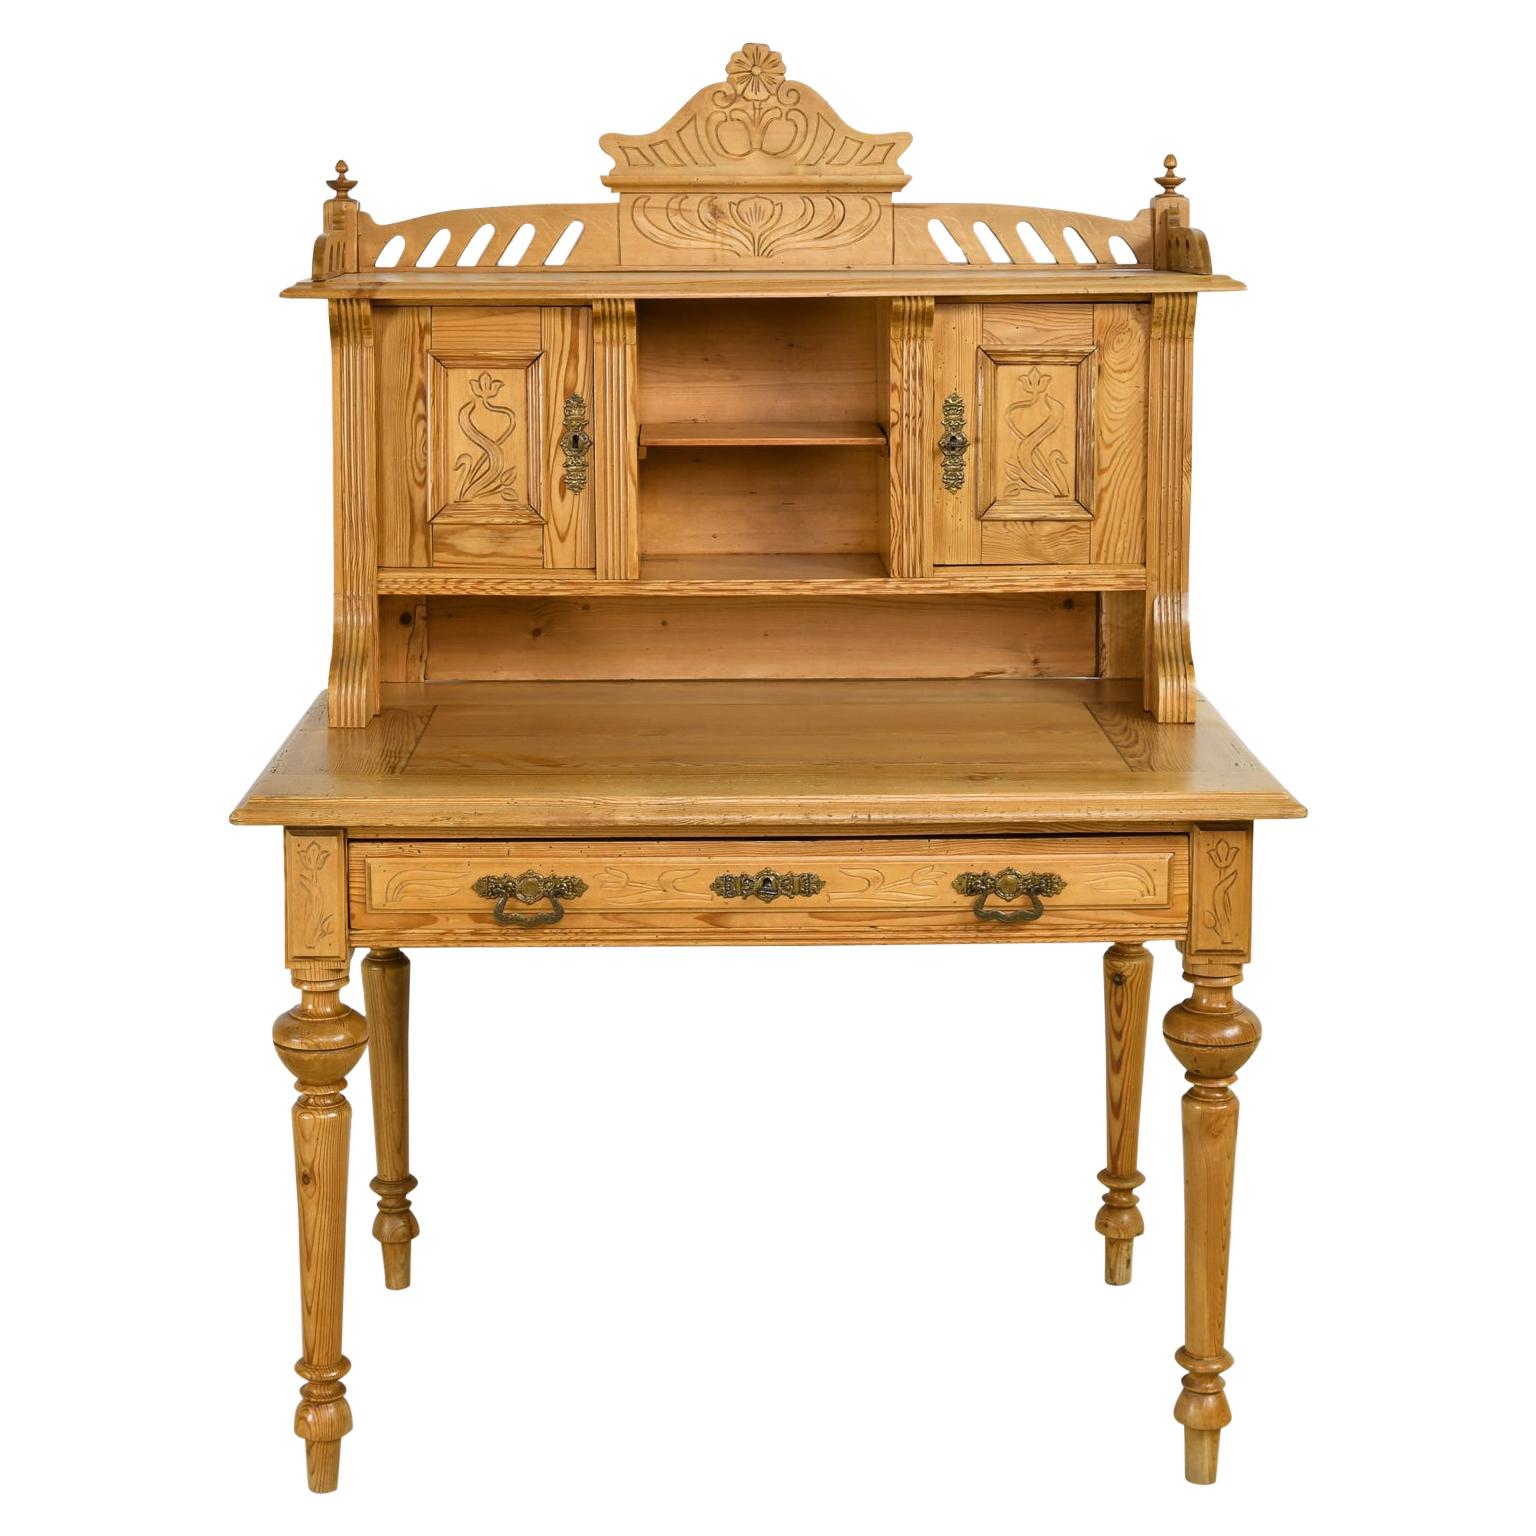 Antique 19th Century German Jugendstil/ Art Nouveau Writing Desk in Pine